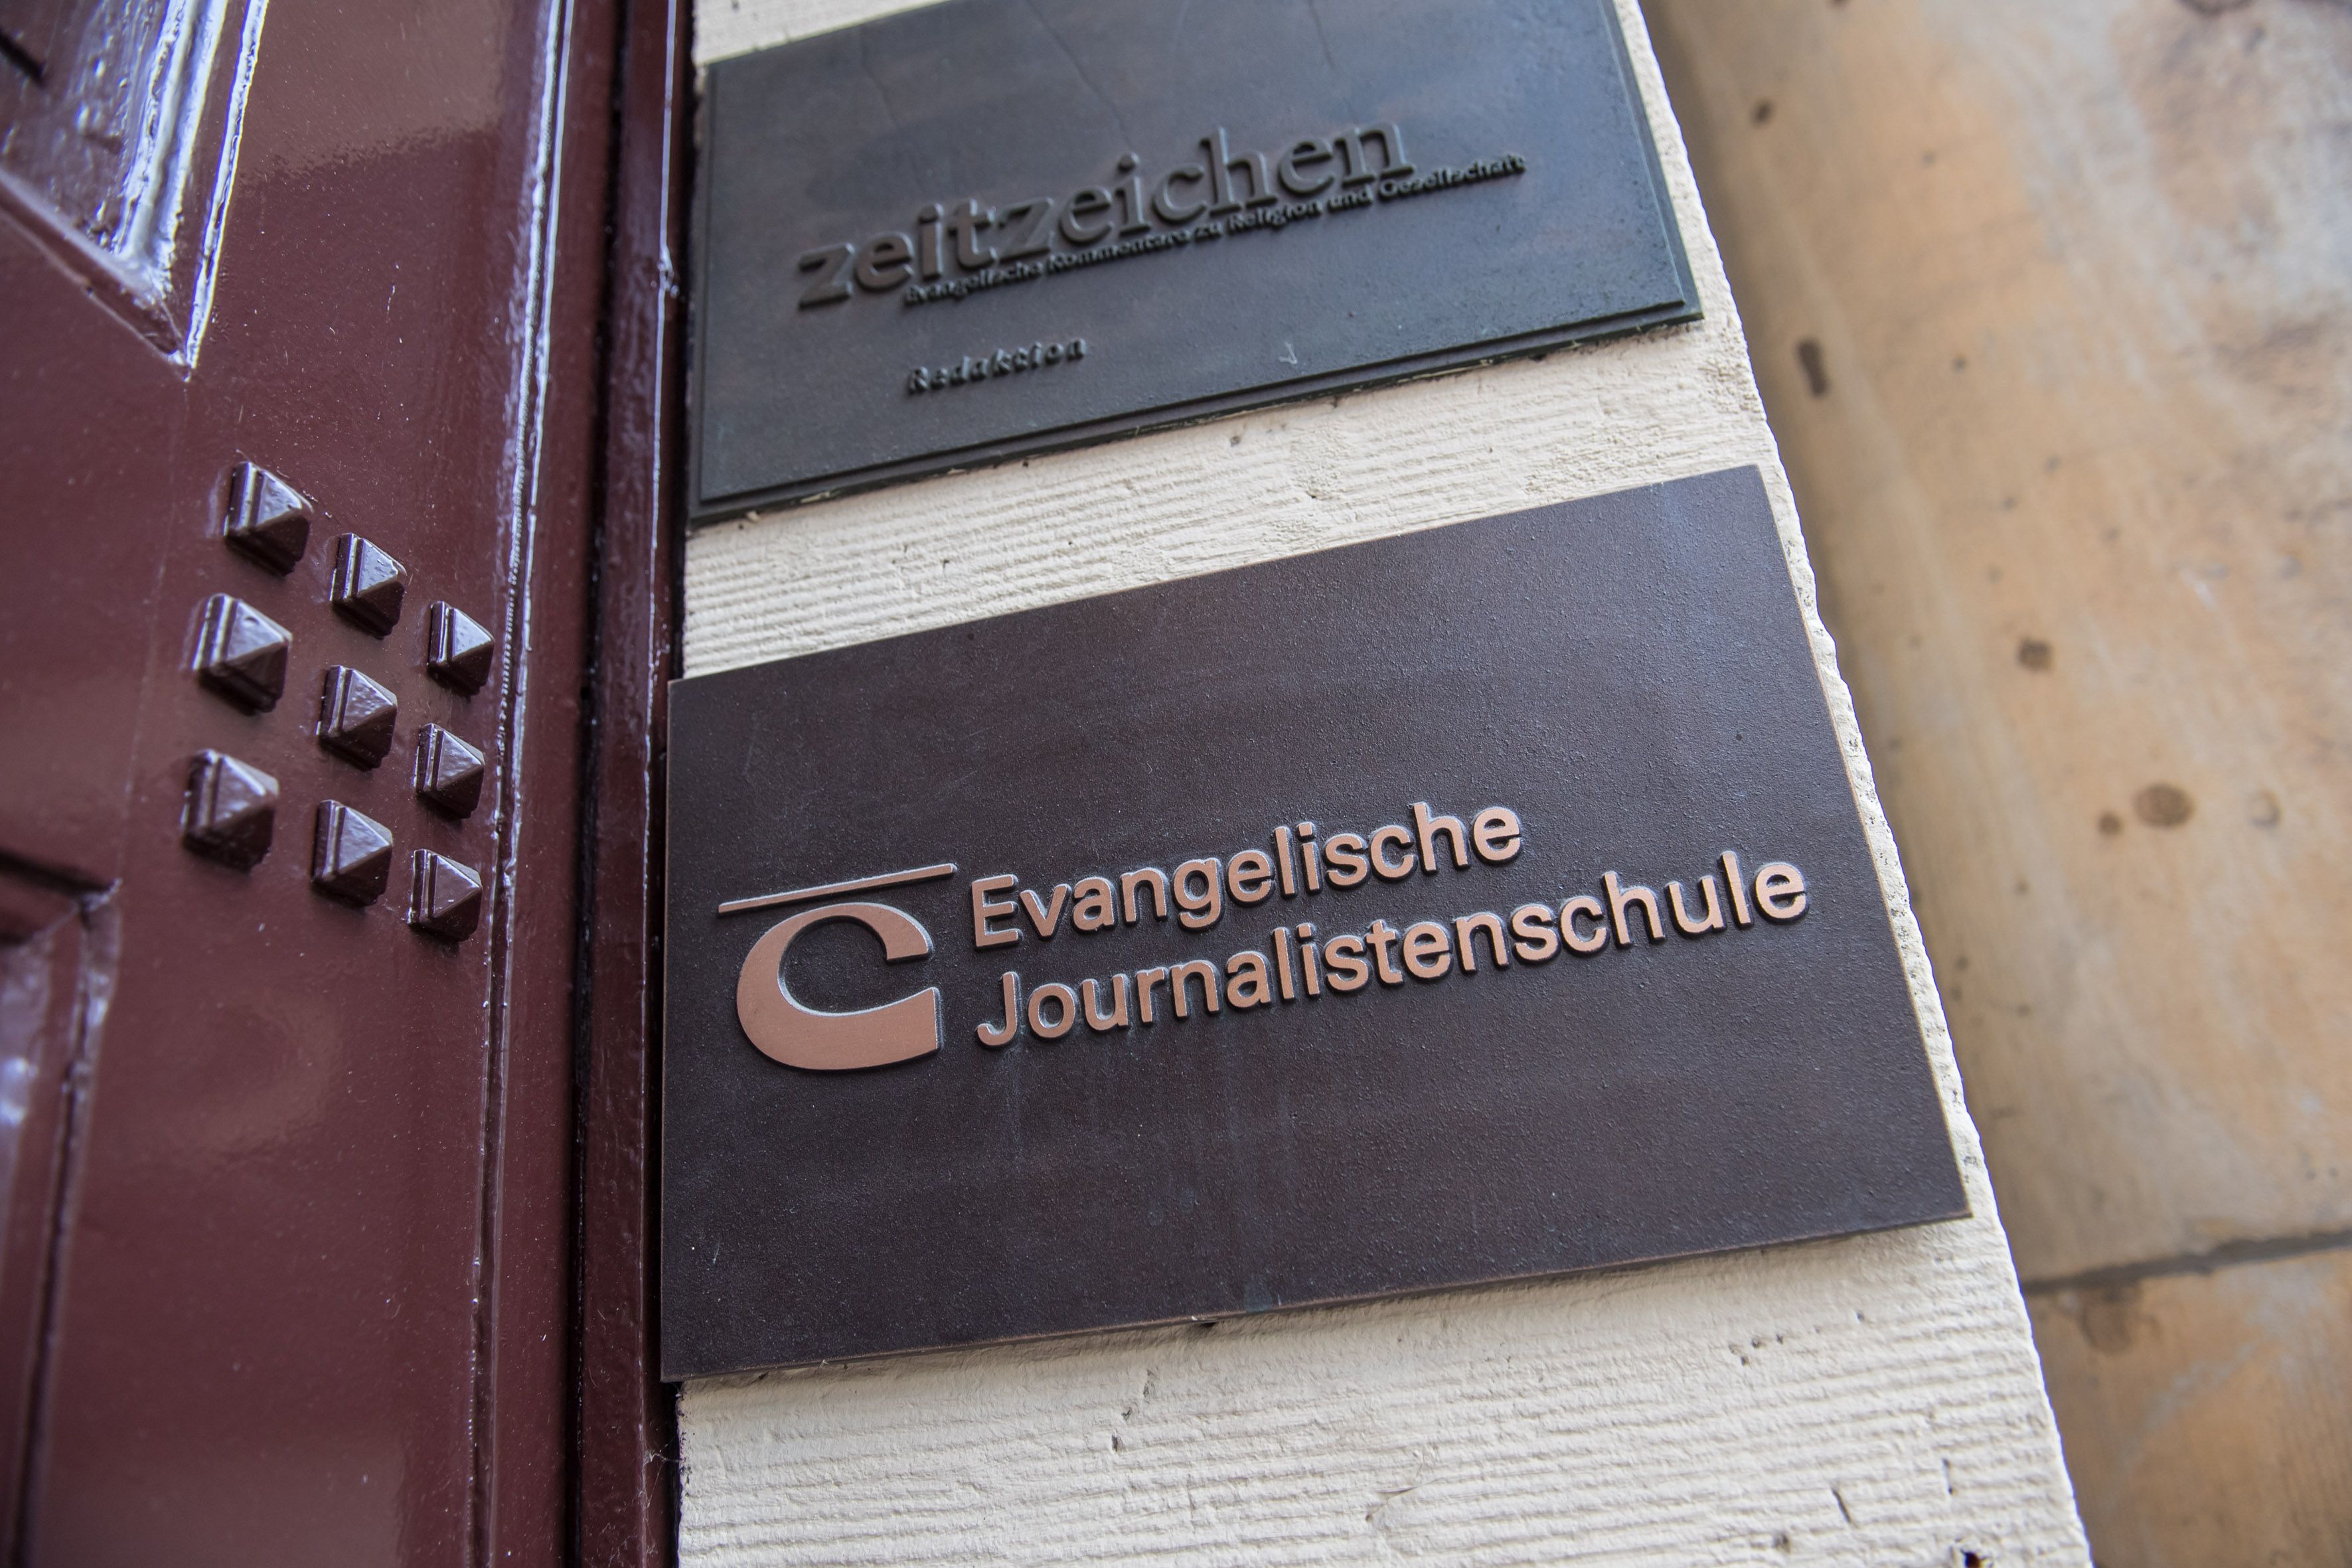 Berlin, Jebensstraße 3, direkt hinterm Bahnhof Zoo. Hier residiert seit 1995 die Evangelische Journalistenschule (EJS) und seit 2000 auch die Redaktion von zeitzeichen.